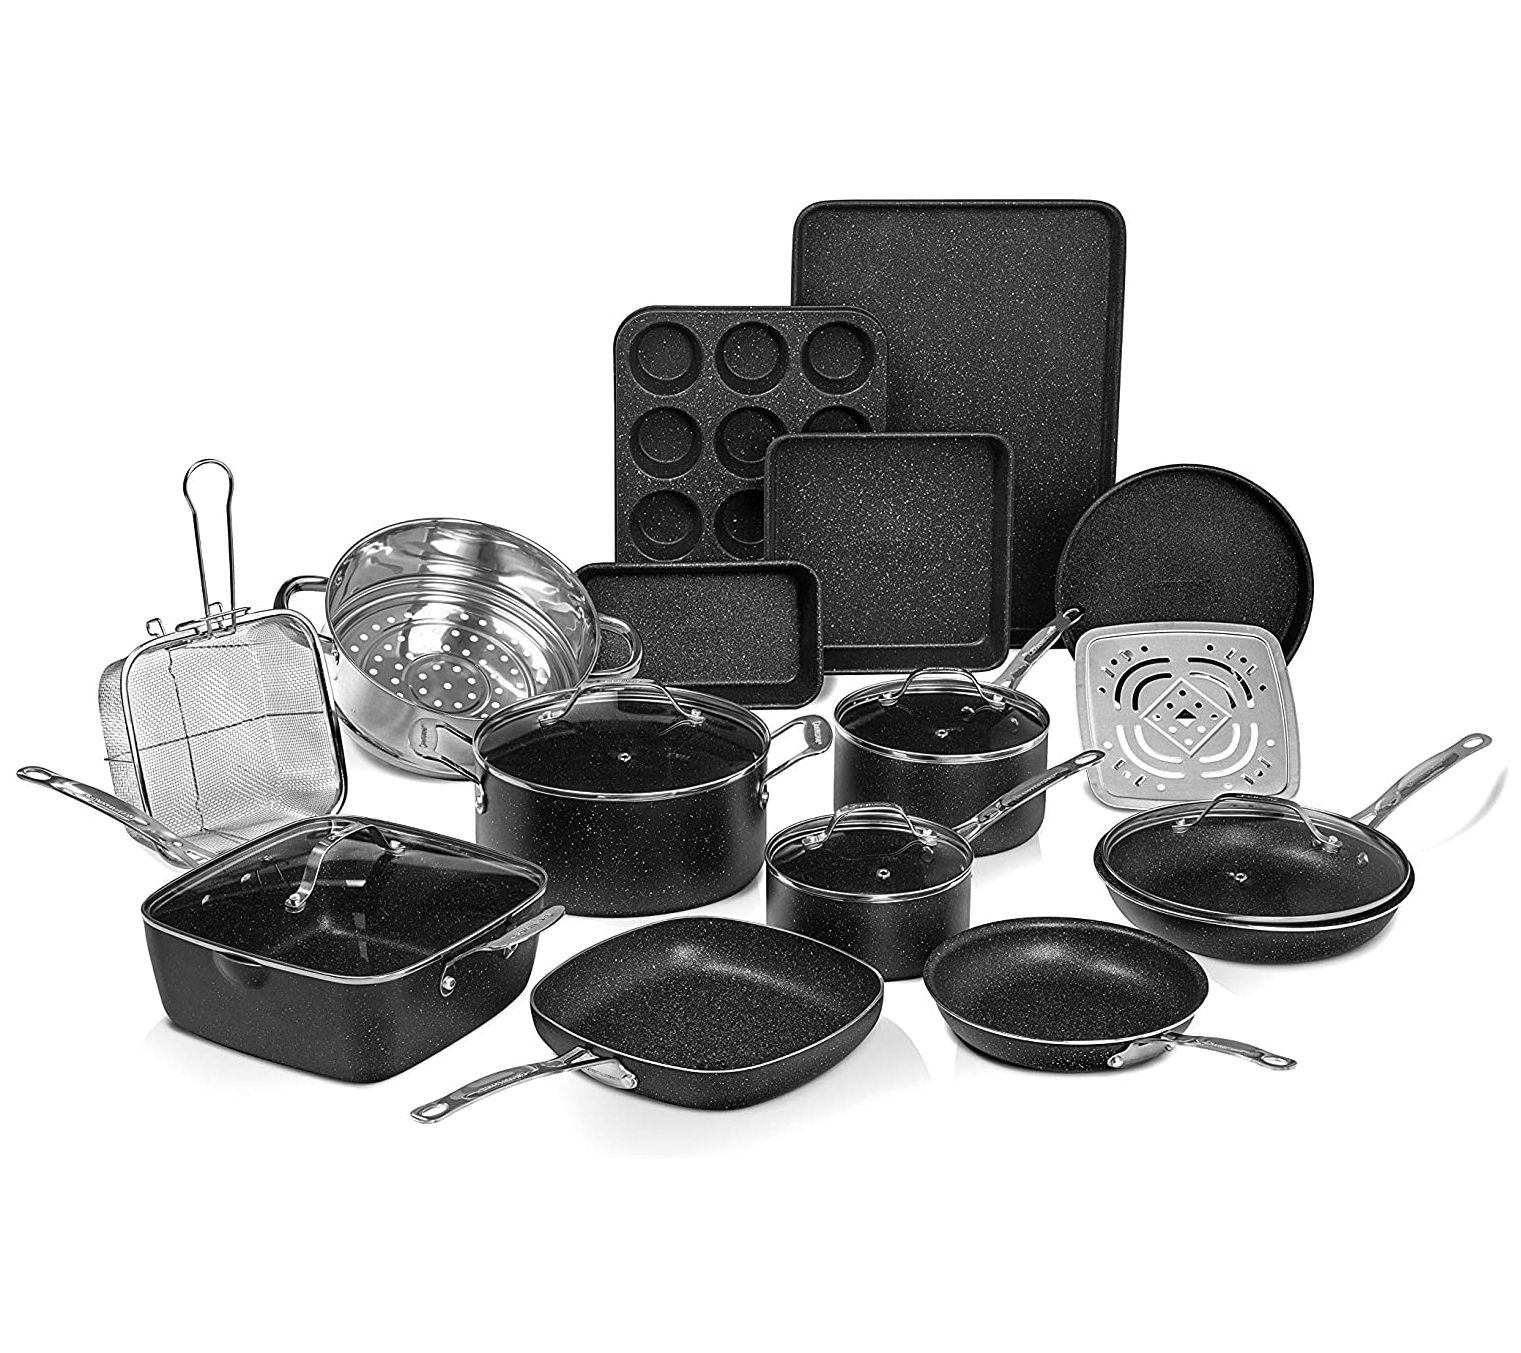 Granitestone 20 Piece Nonstick Cookware And Bakeware Set : Target